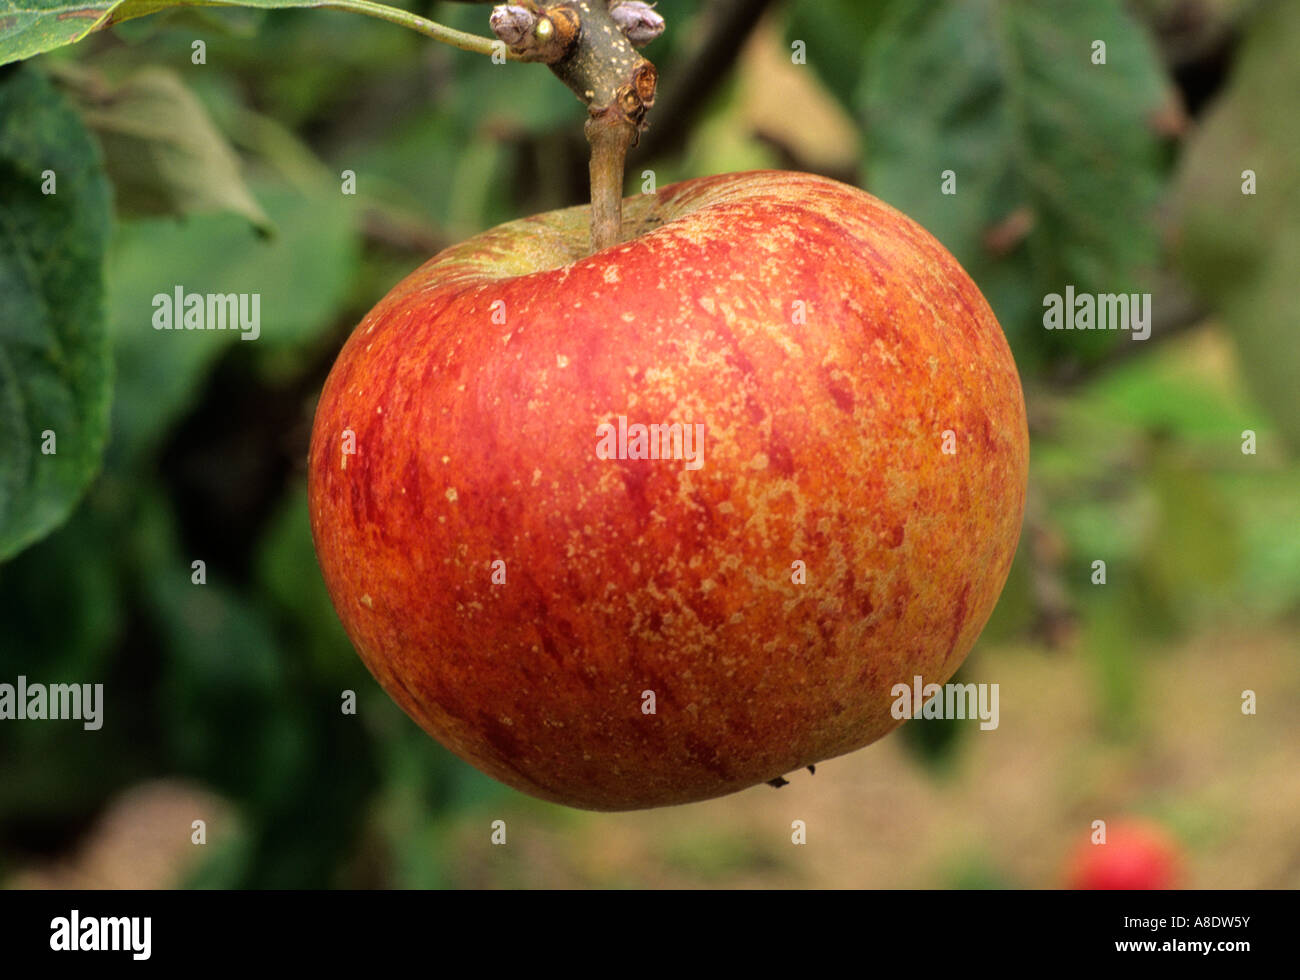 Apple Cox's Orange Pippin diversas variedades de manzanas de frutas crecen en árboles, comer sano Foto de stock